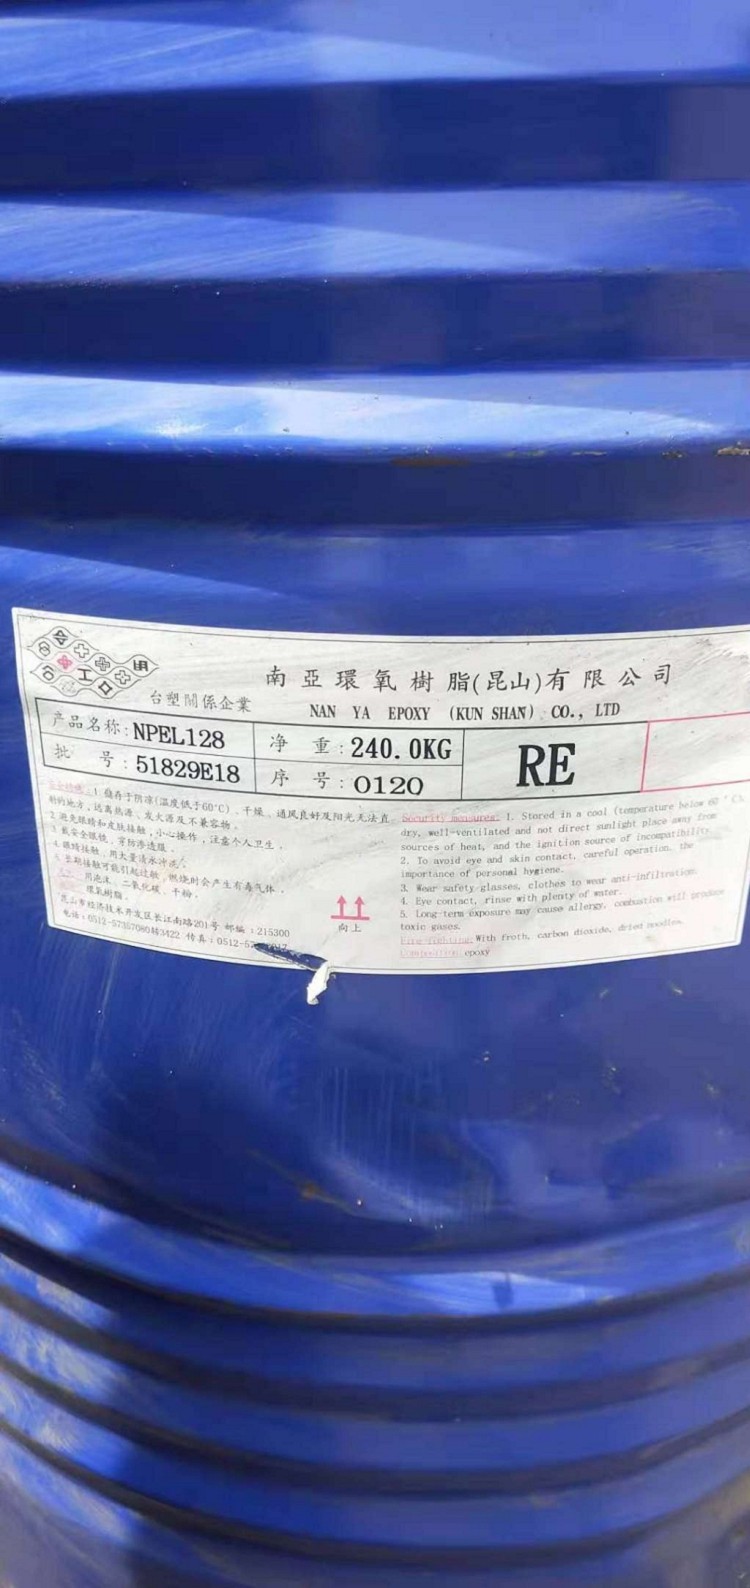 安顺回收标准橡胶 回收ACR树脂有限公司